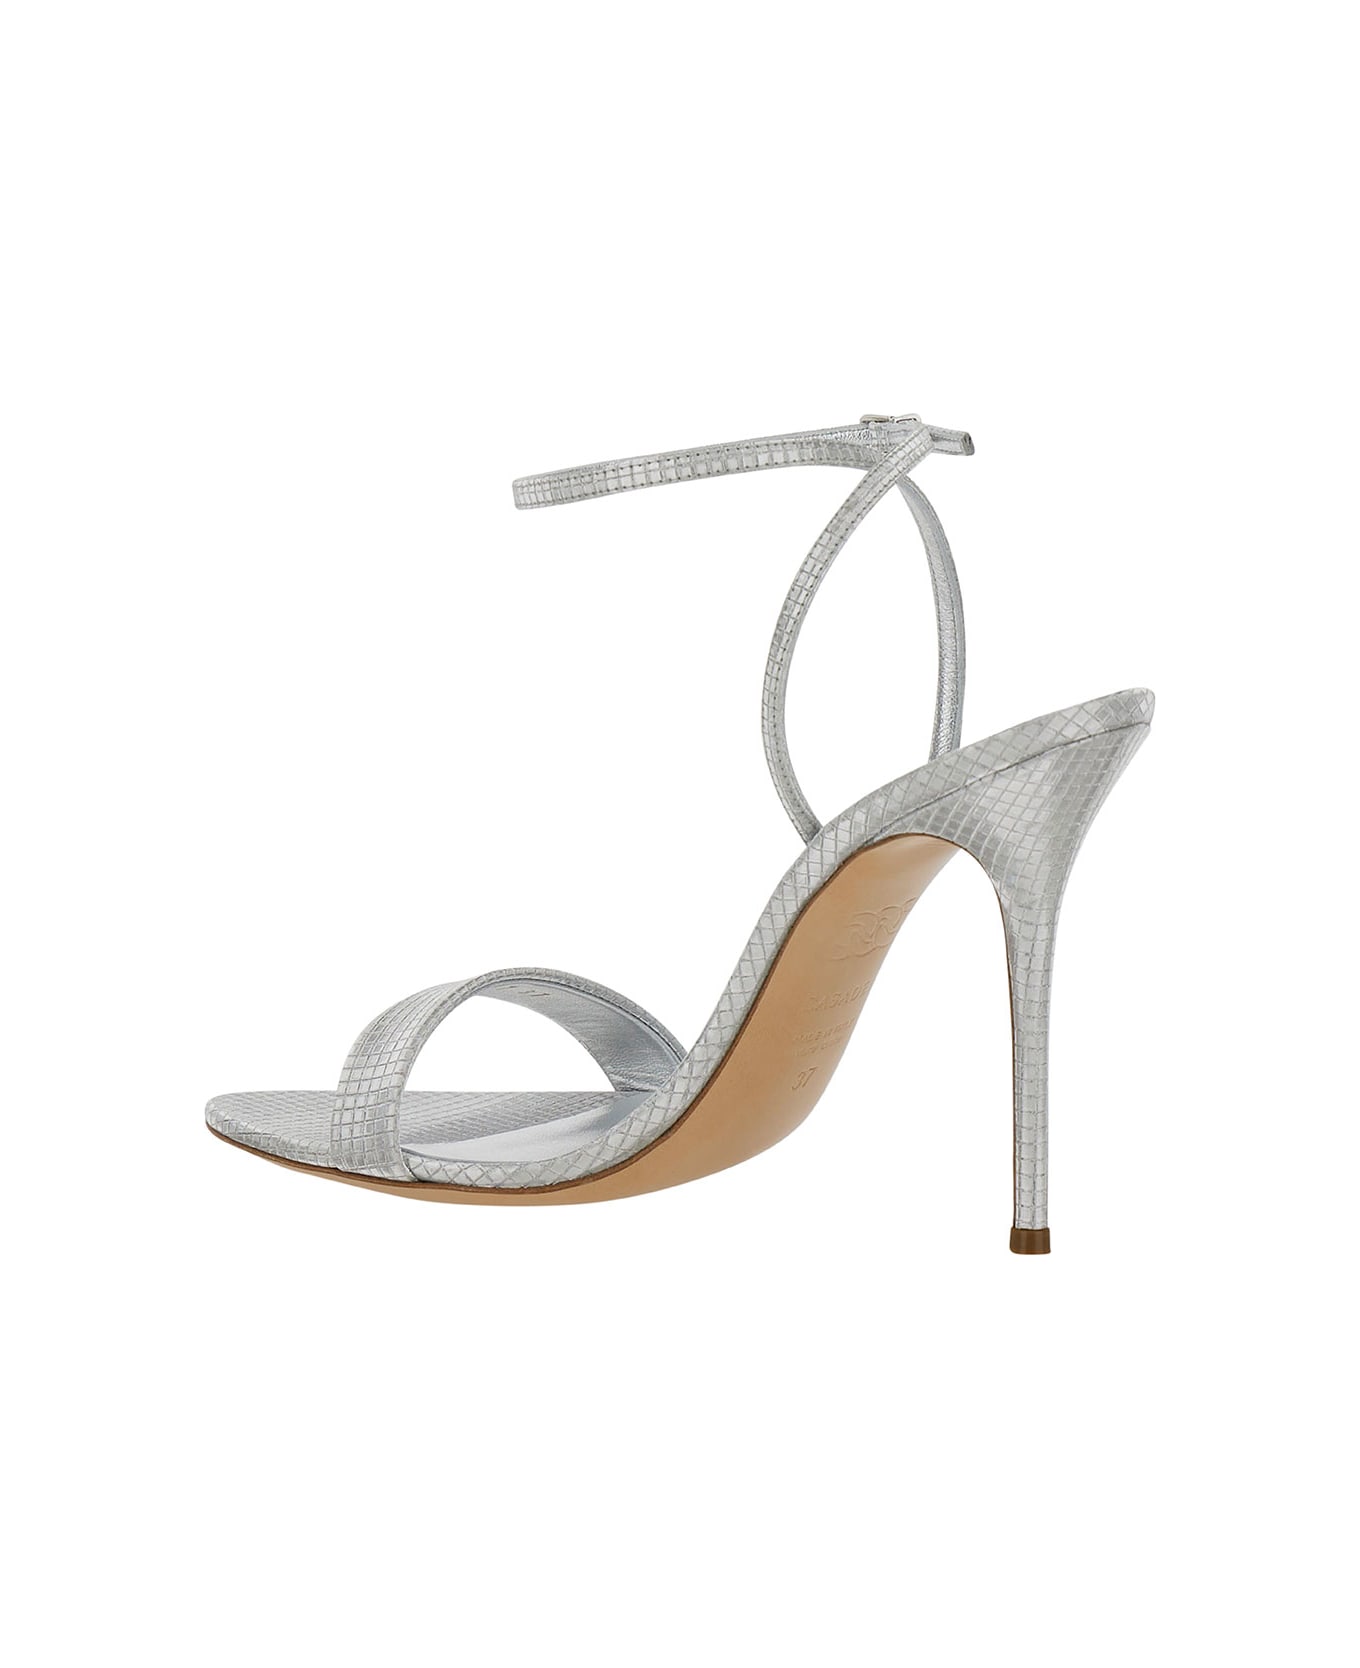 Casadei 'diadema' Silver Sandals With Blade Heel In Metallic Fabric Woman - Metallic サンダル